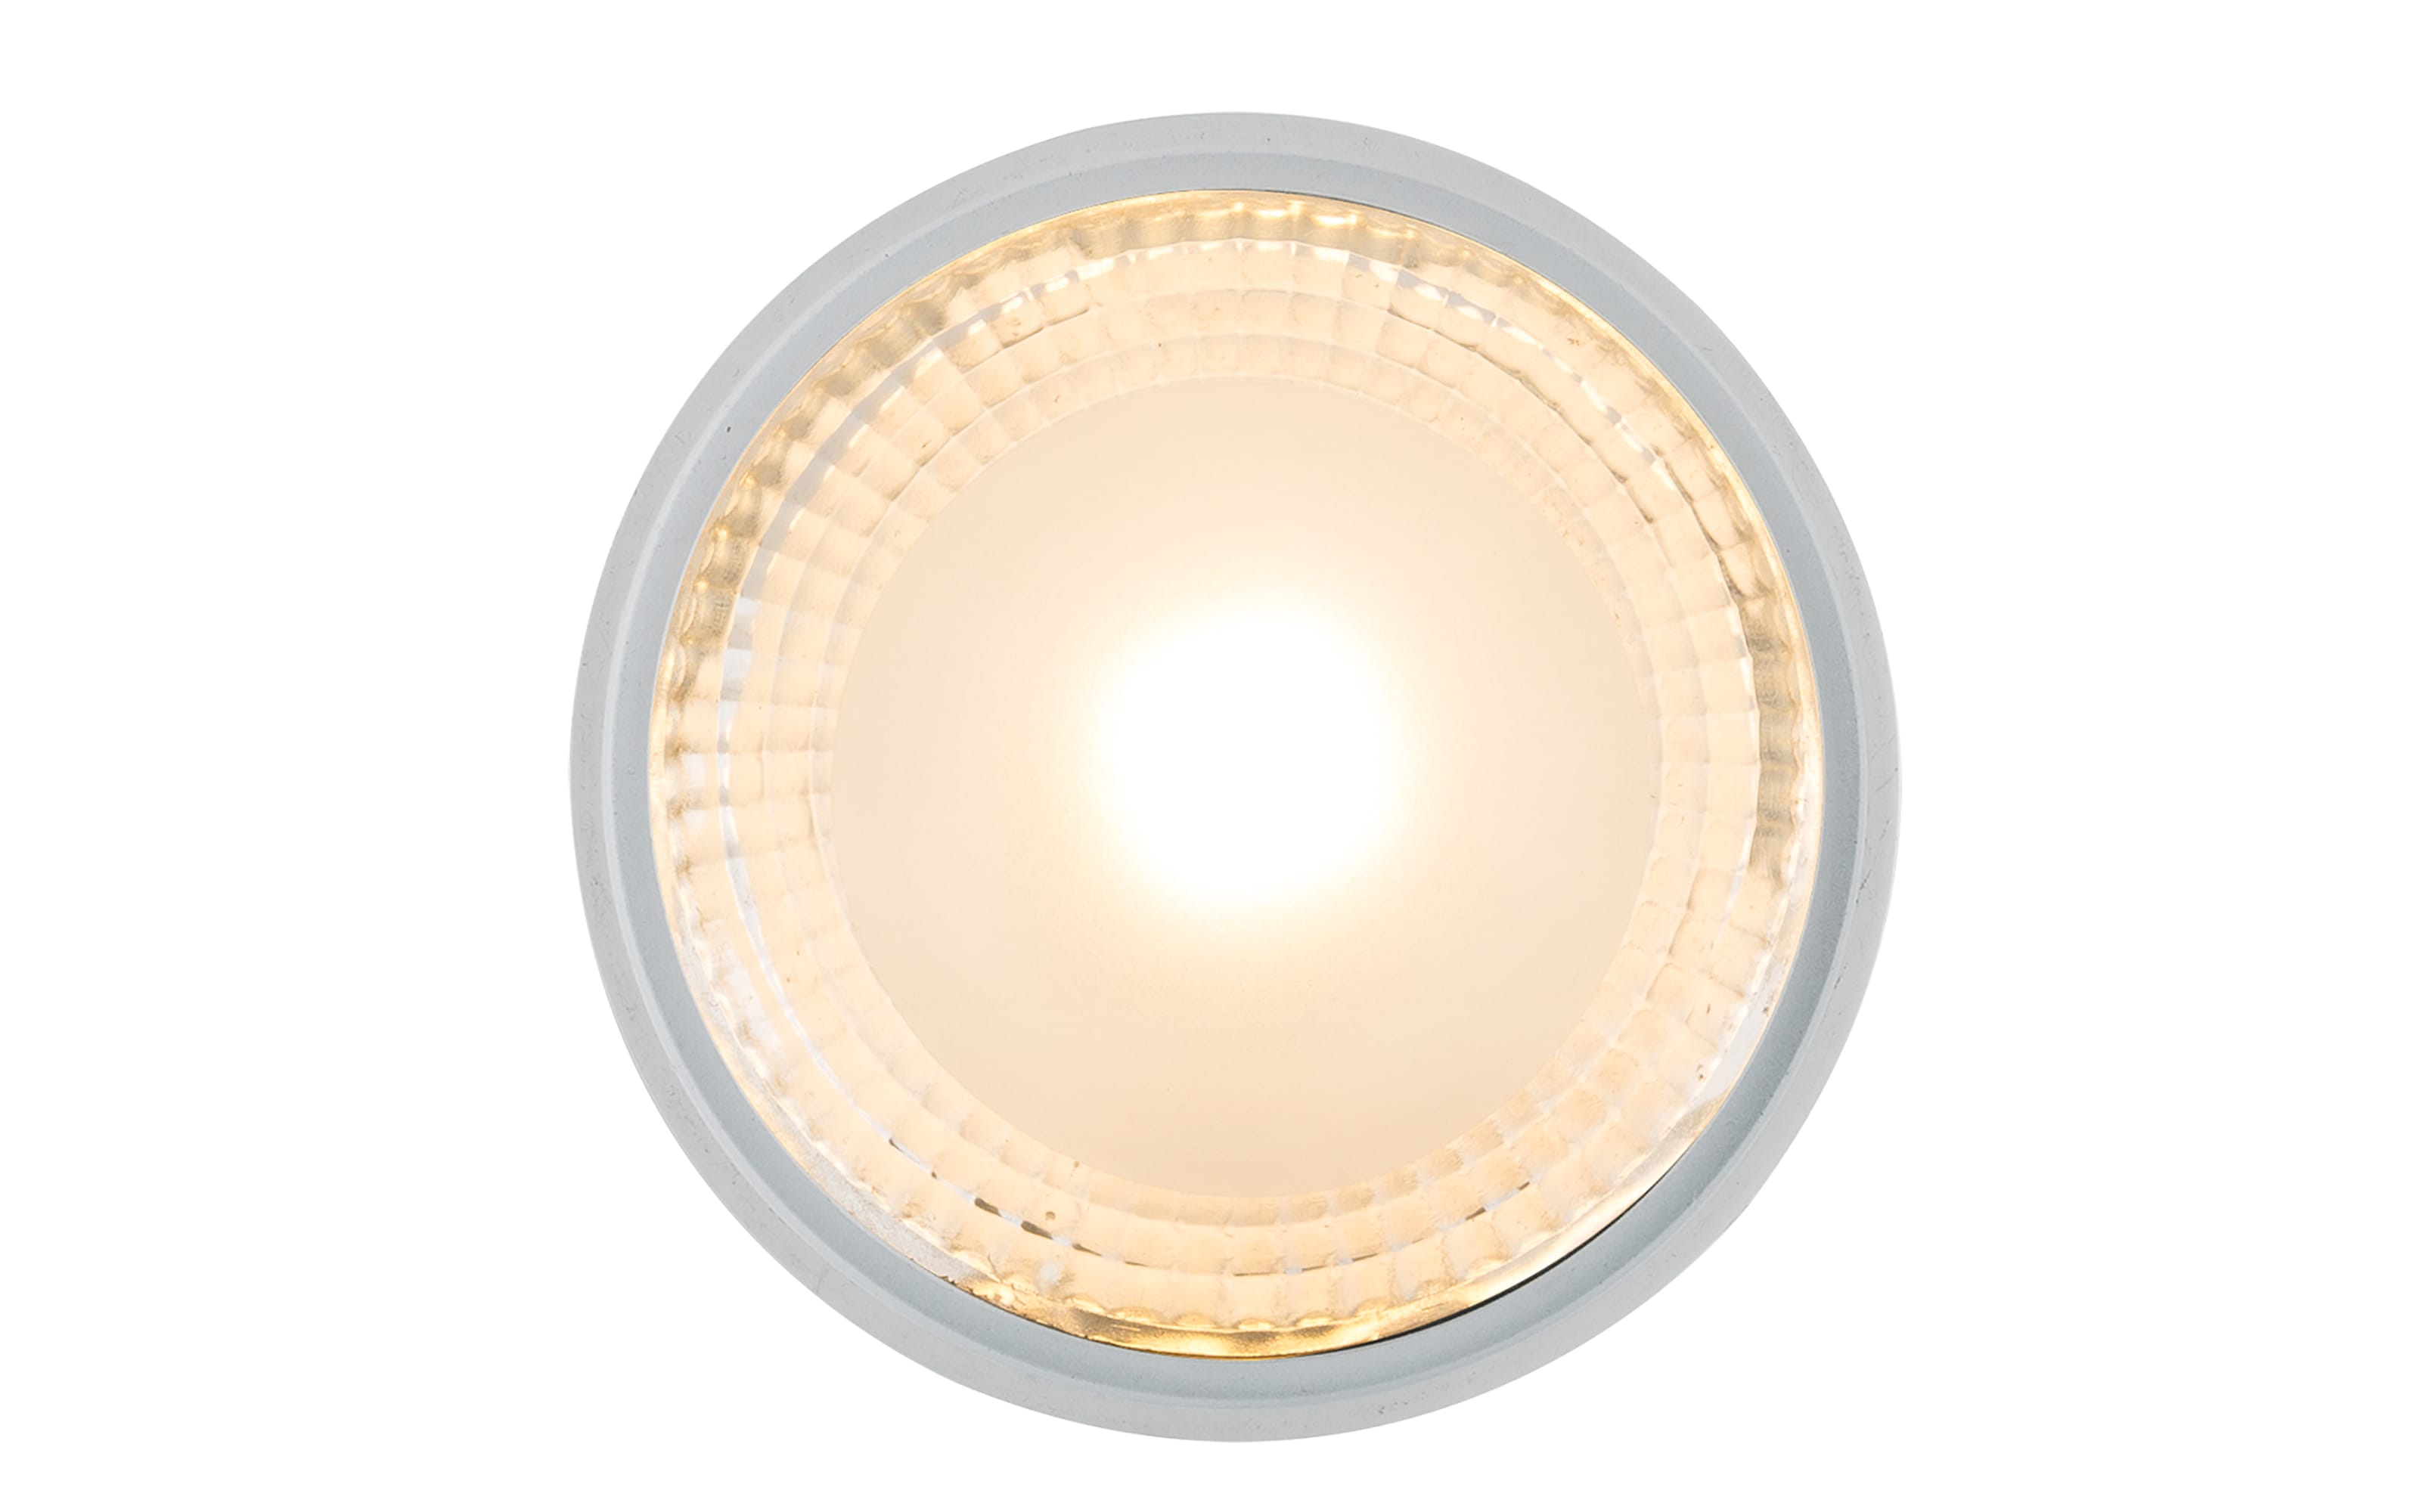 LED-Deckenleuchte Serena, nickel weiß, 11 cm